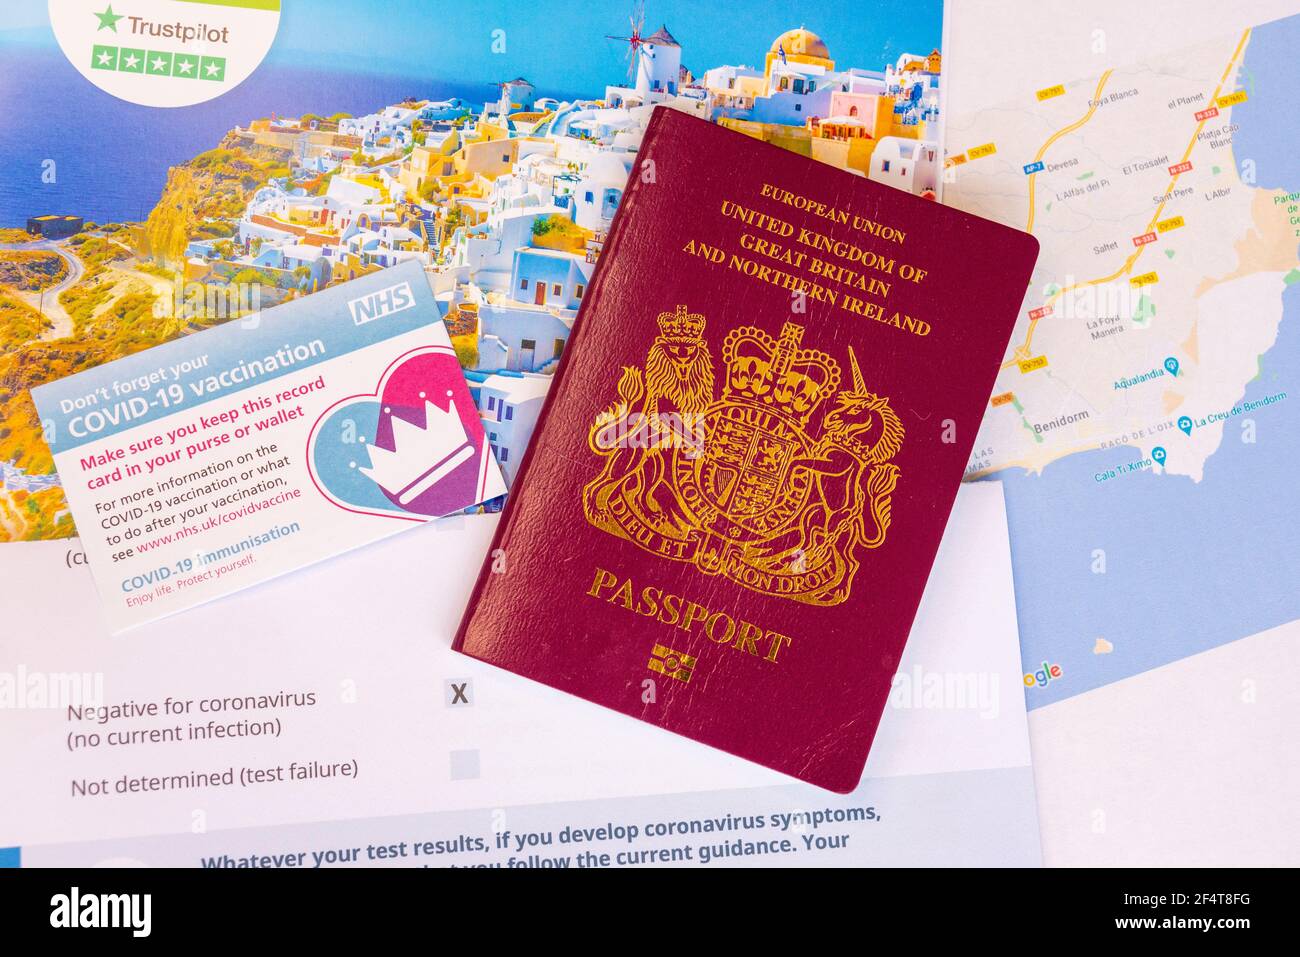 Concepto de pasaporte de viaje de la vacuna COVID 19 del Reino Unido, con tarjeta de registro de vacunación NHS, pasaporte de la UE del Reino Unido, resultado negativo de la prueba, folleto de vacaciones y mapa de España Foto de stock